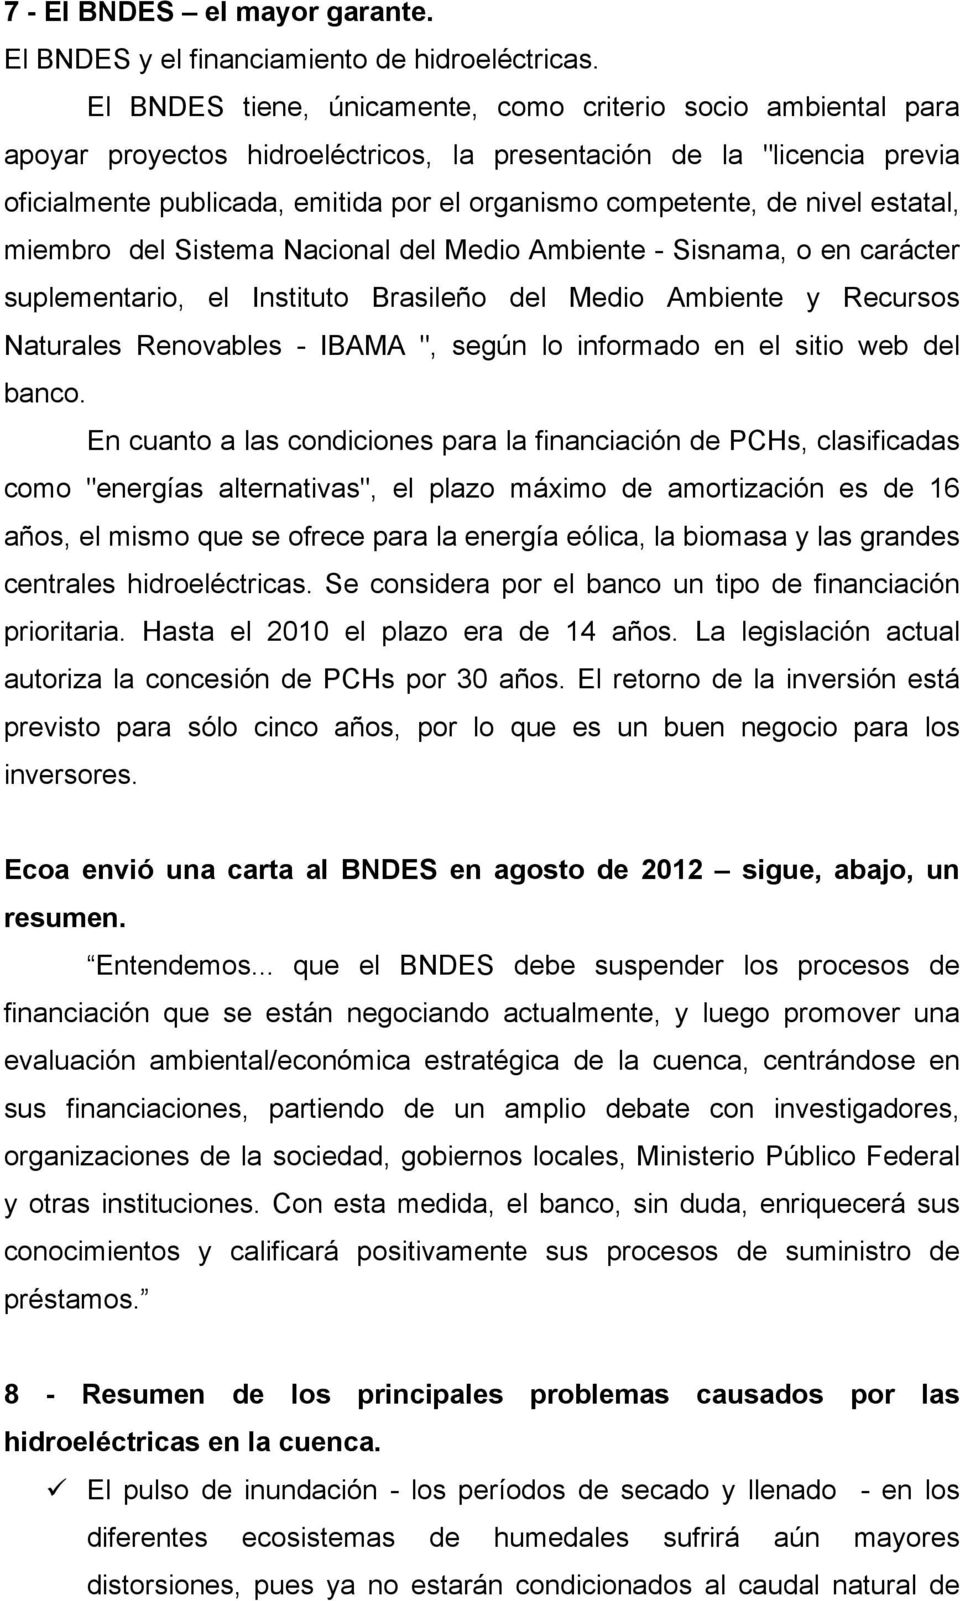 nivel estatal, miembro del Sistema Nacional del Medio Ambiente - Sisnama, o en carácter suplementario, el Instituto Brasileño del Medio Ambiente y Recursos Naturales Renovables - IBAMA ", según lo